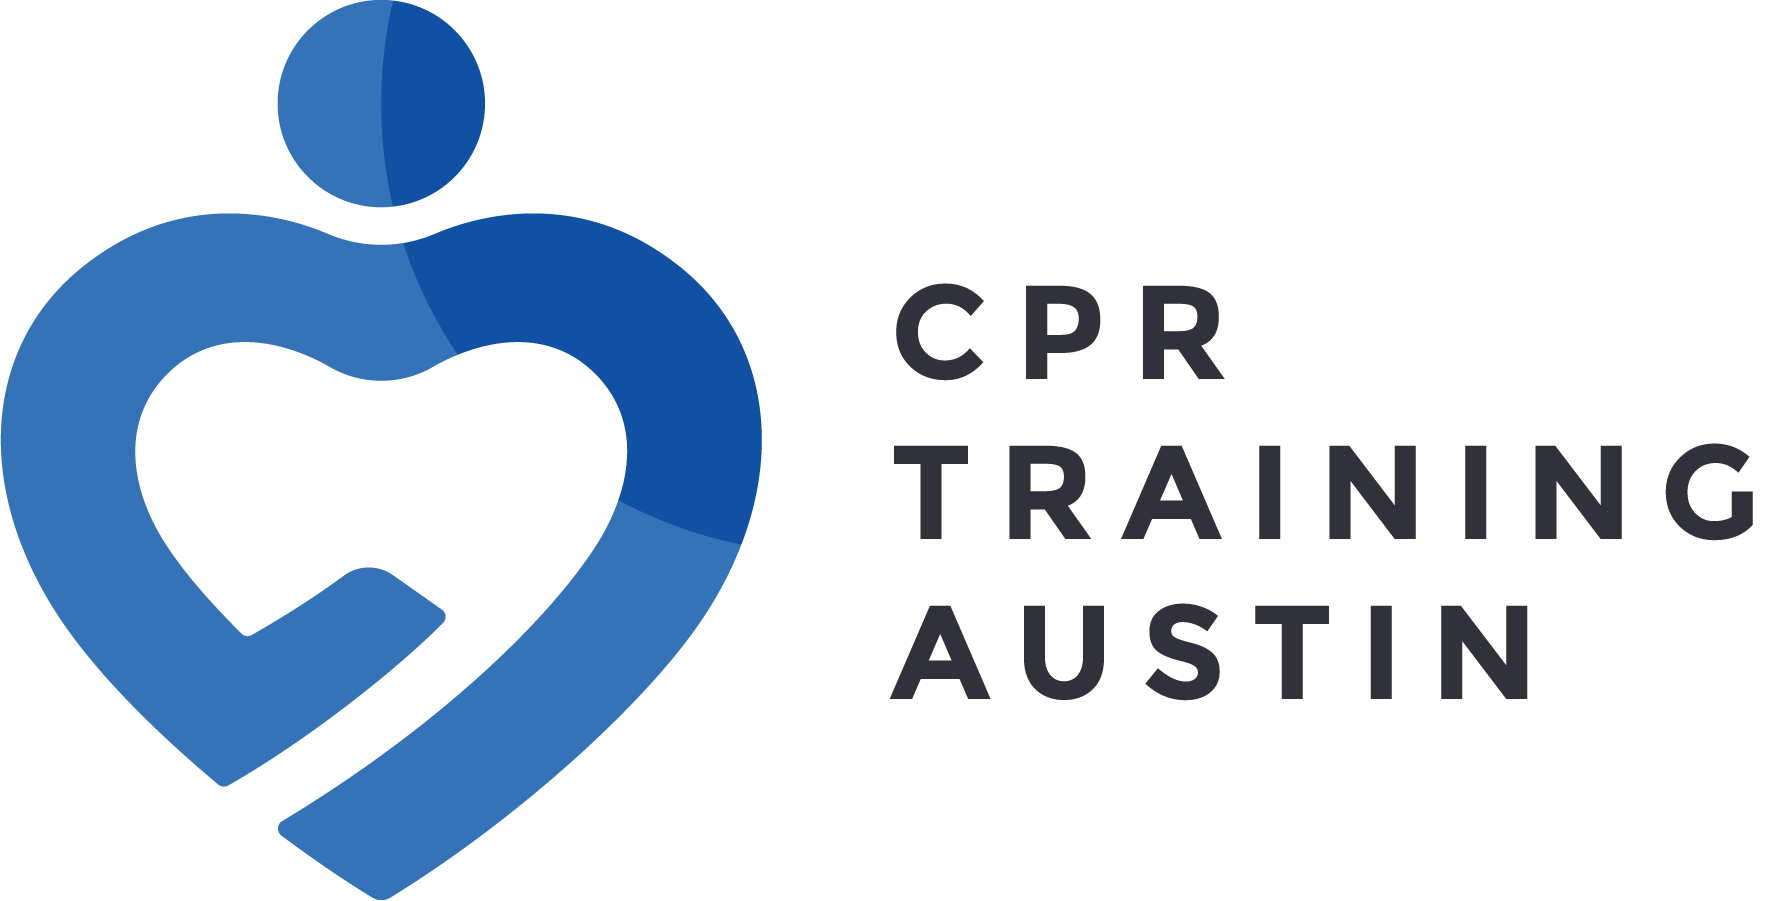 CPR Training Austin Full Logo